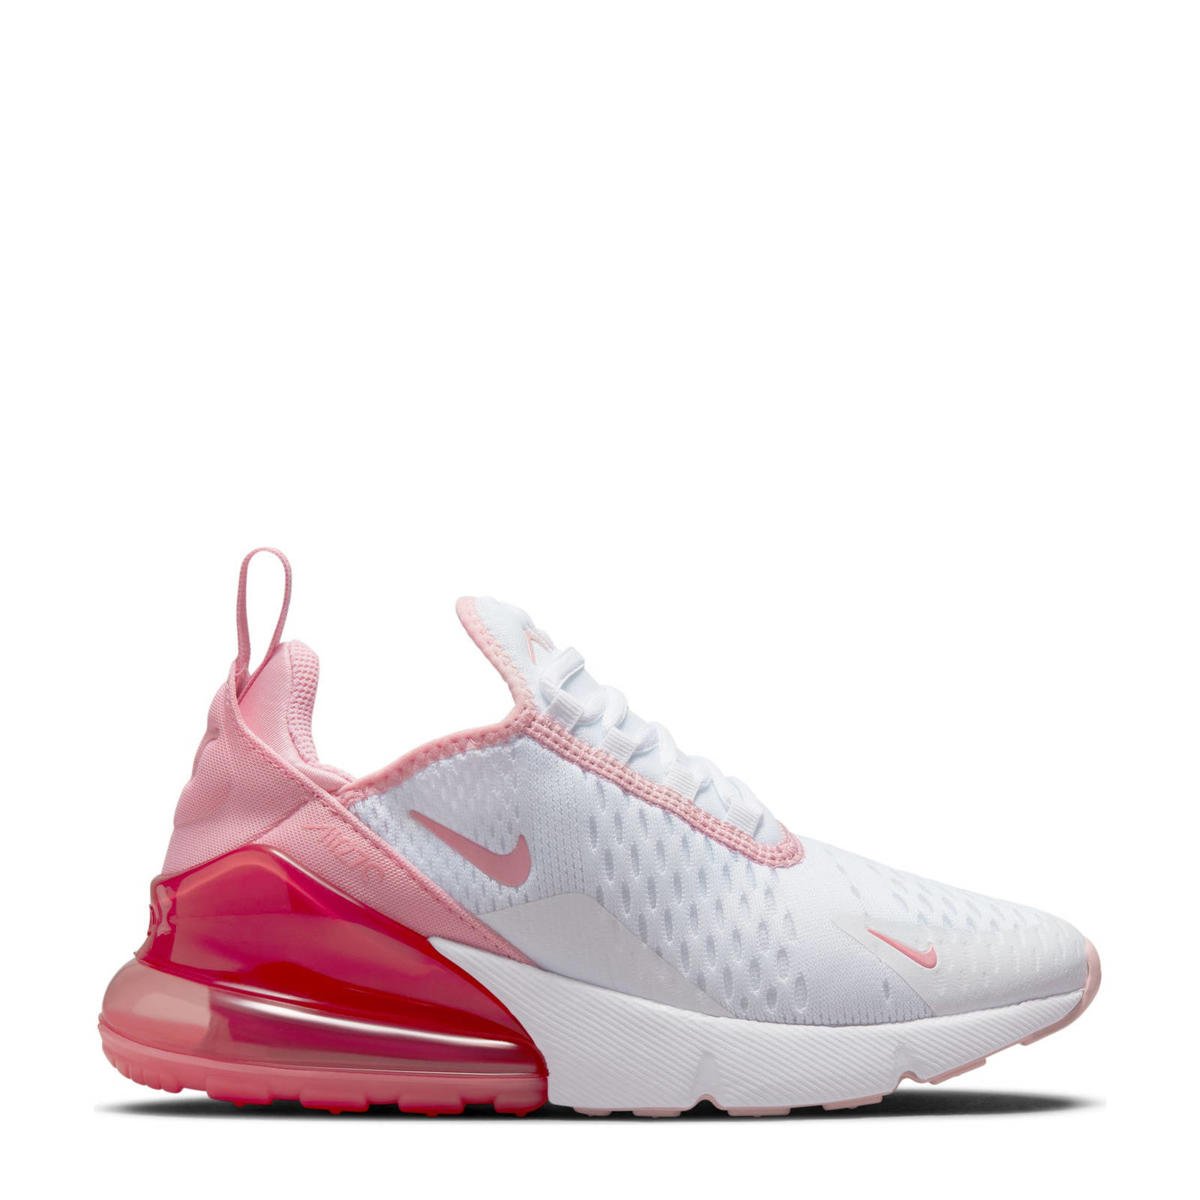 Tonen mooi hack Nike Air Max 270 sneakers wit/roze | wehkamp